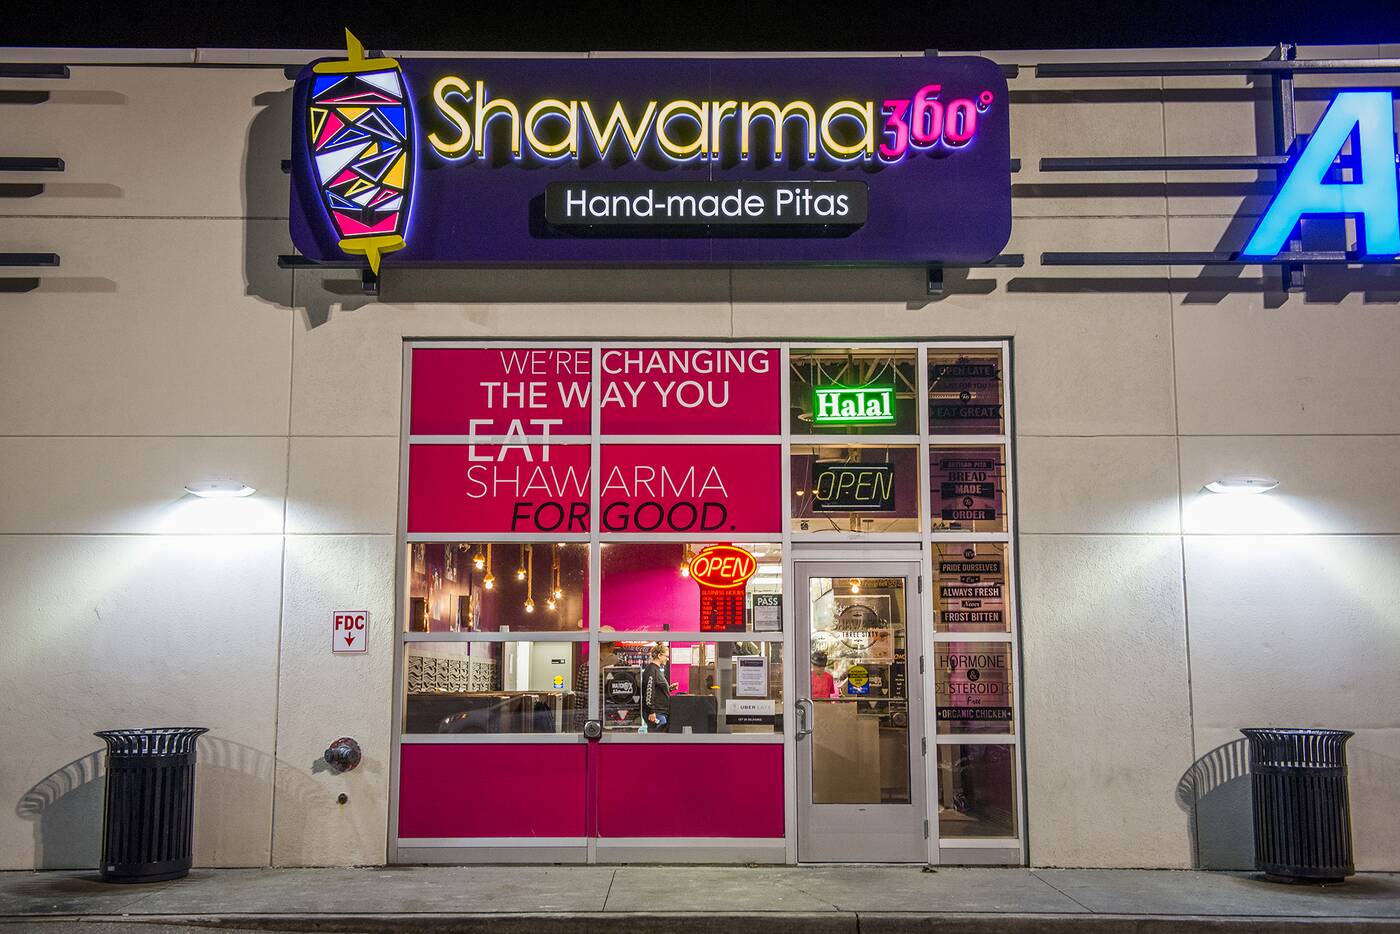 Shawarma 360 Toronto